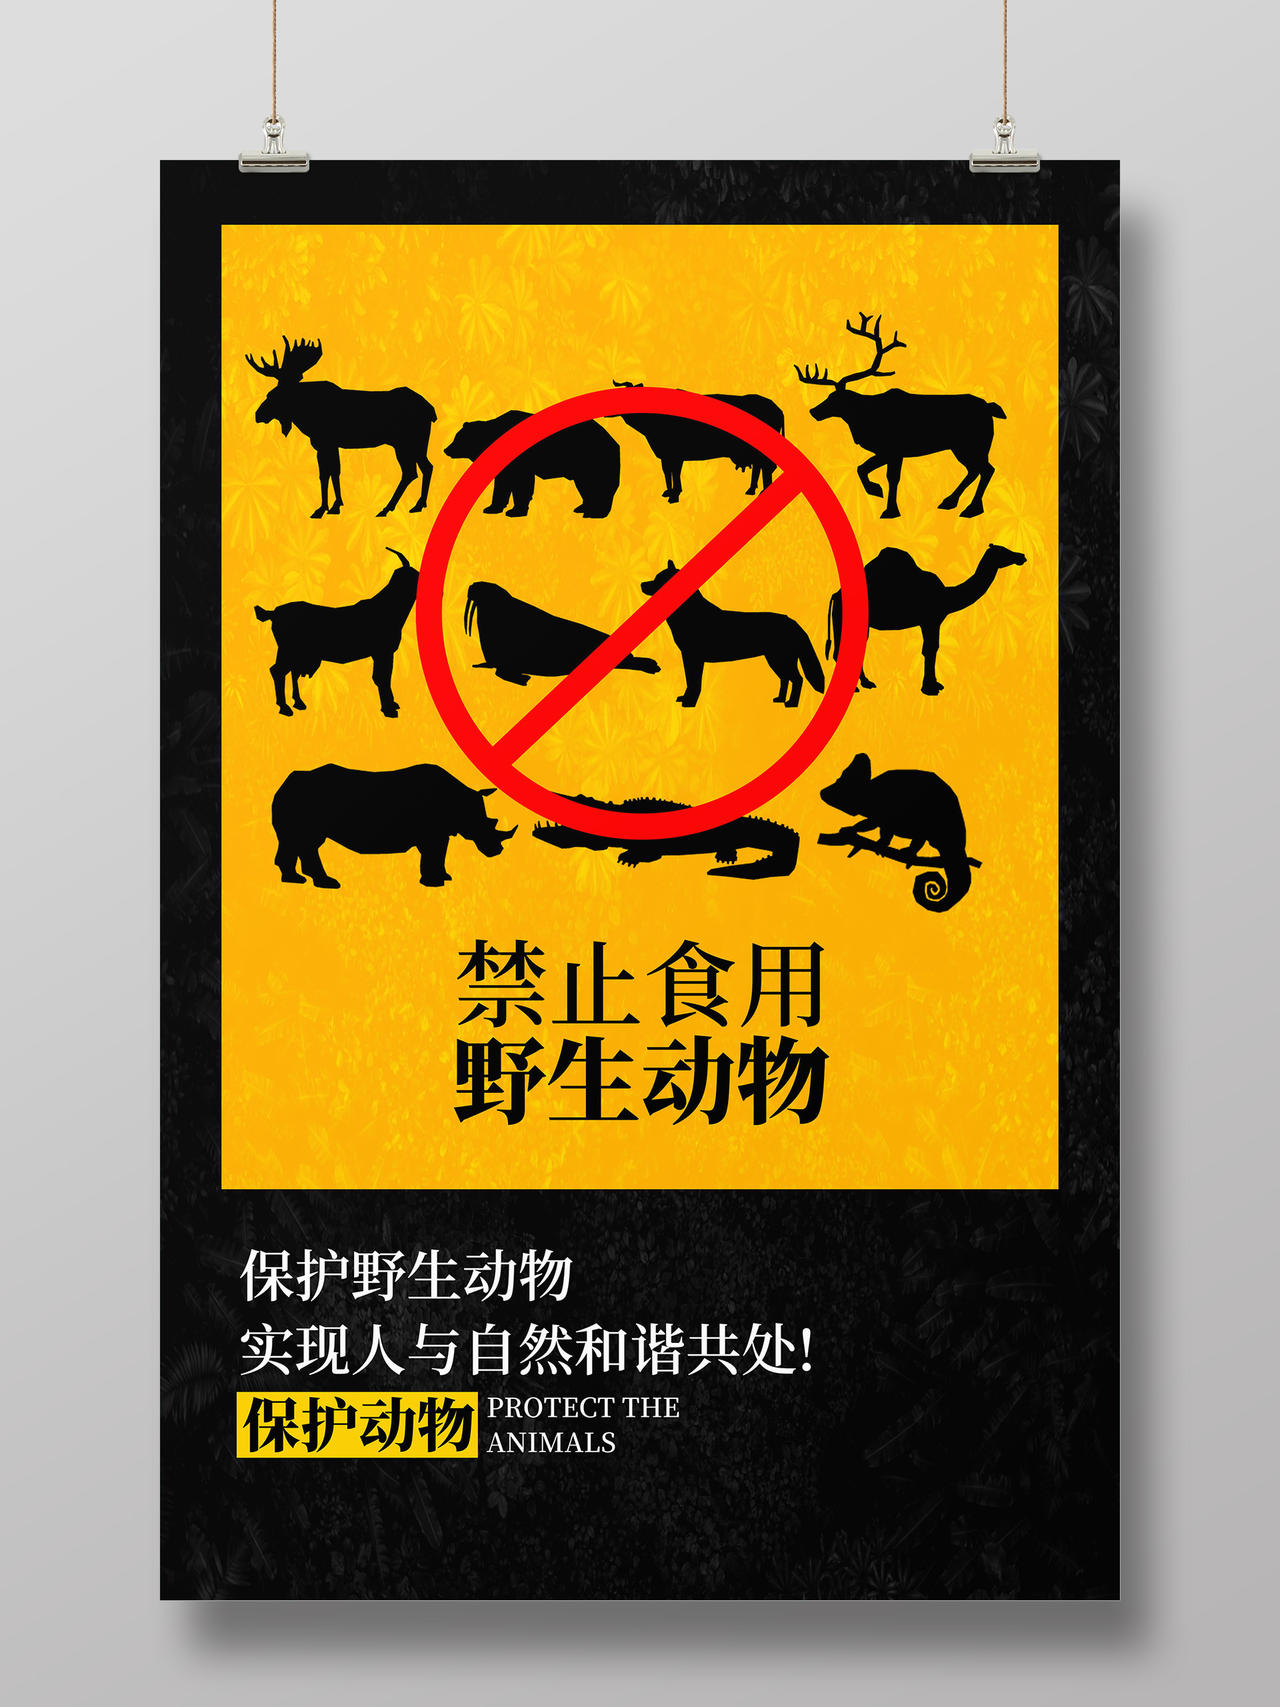 拒绝食用野味保护野生动物人与自然和谐共处海报